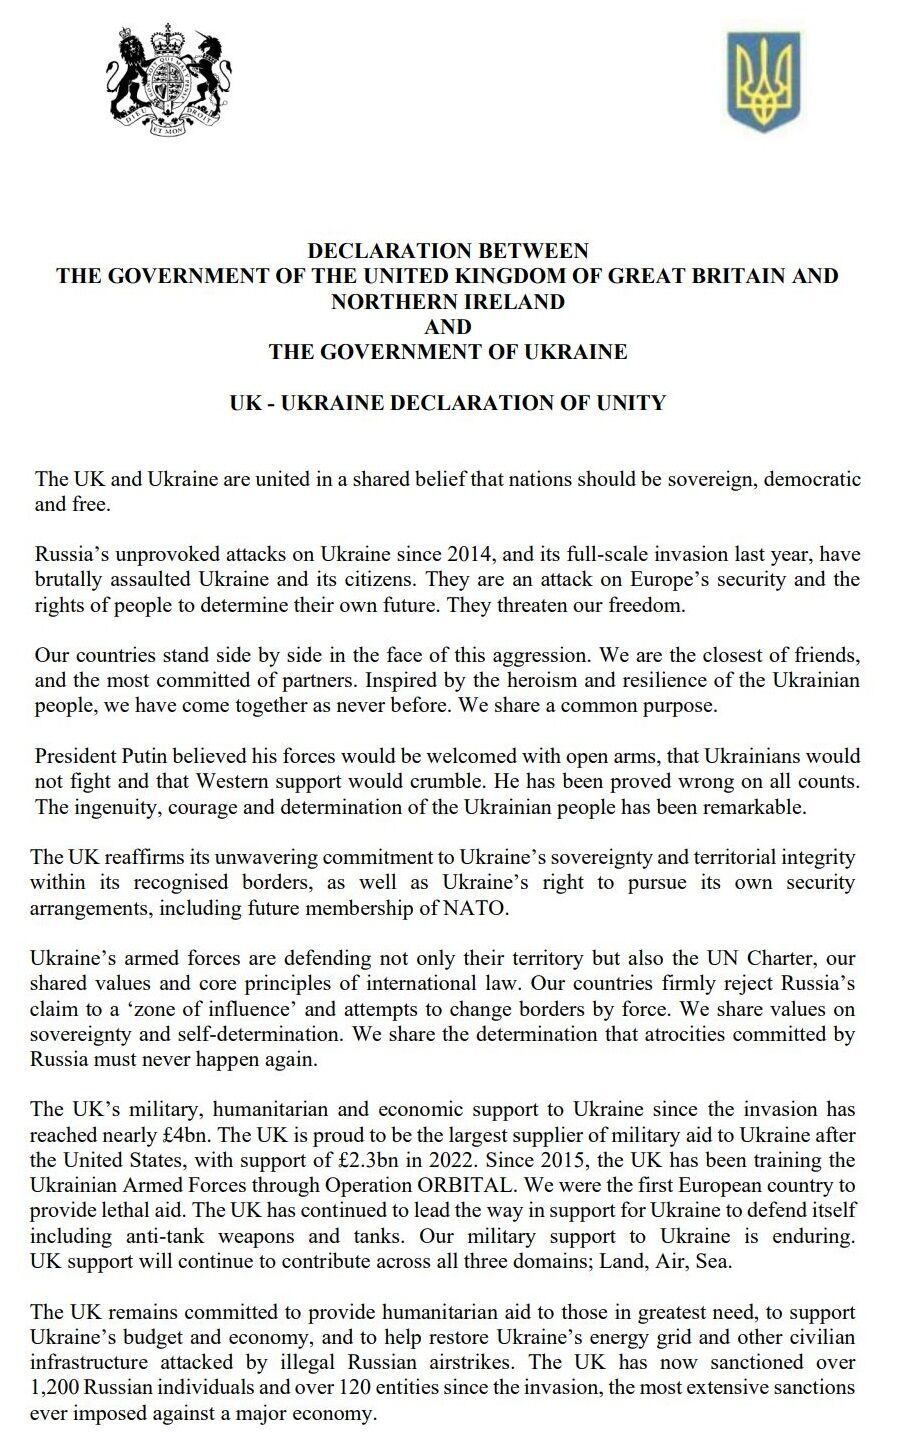 "Вместе построим сильную Украину": что предусматривает Лондонская декларация, подписанная Зеленским и Сунаком